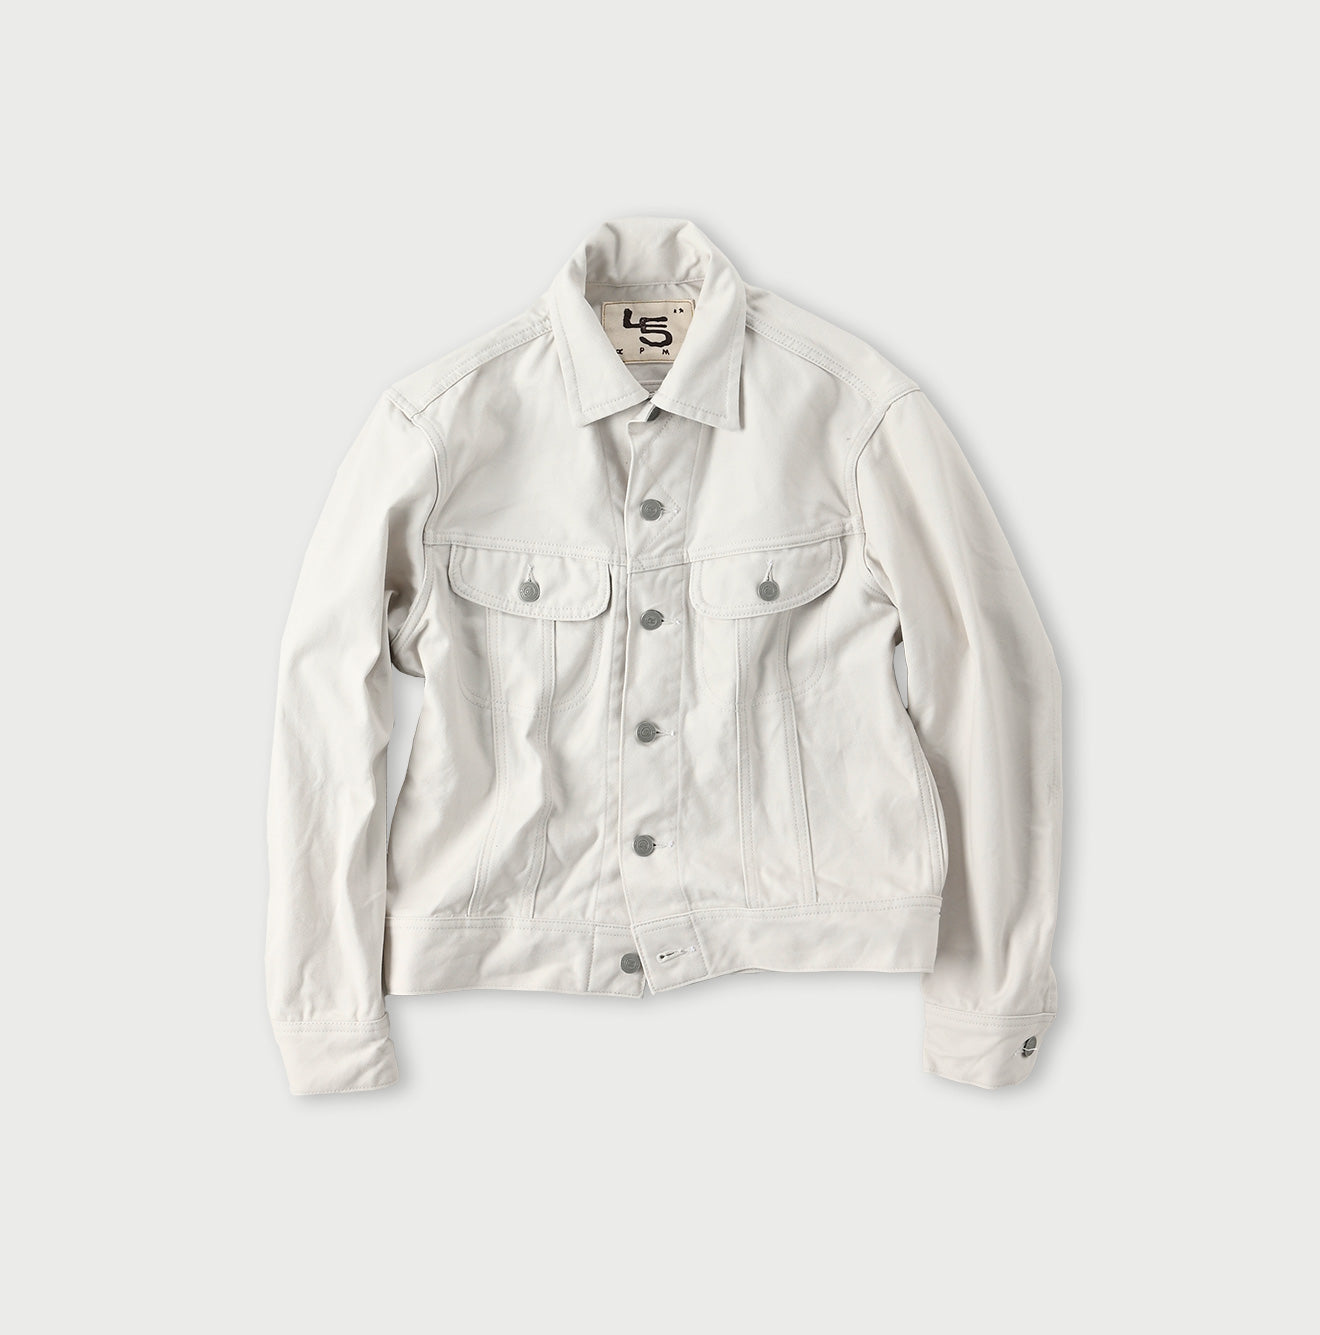 Tabi Cloth 908 Hikohime Jacket